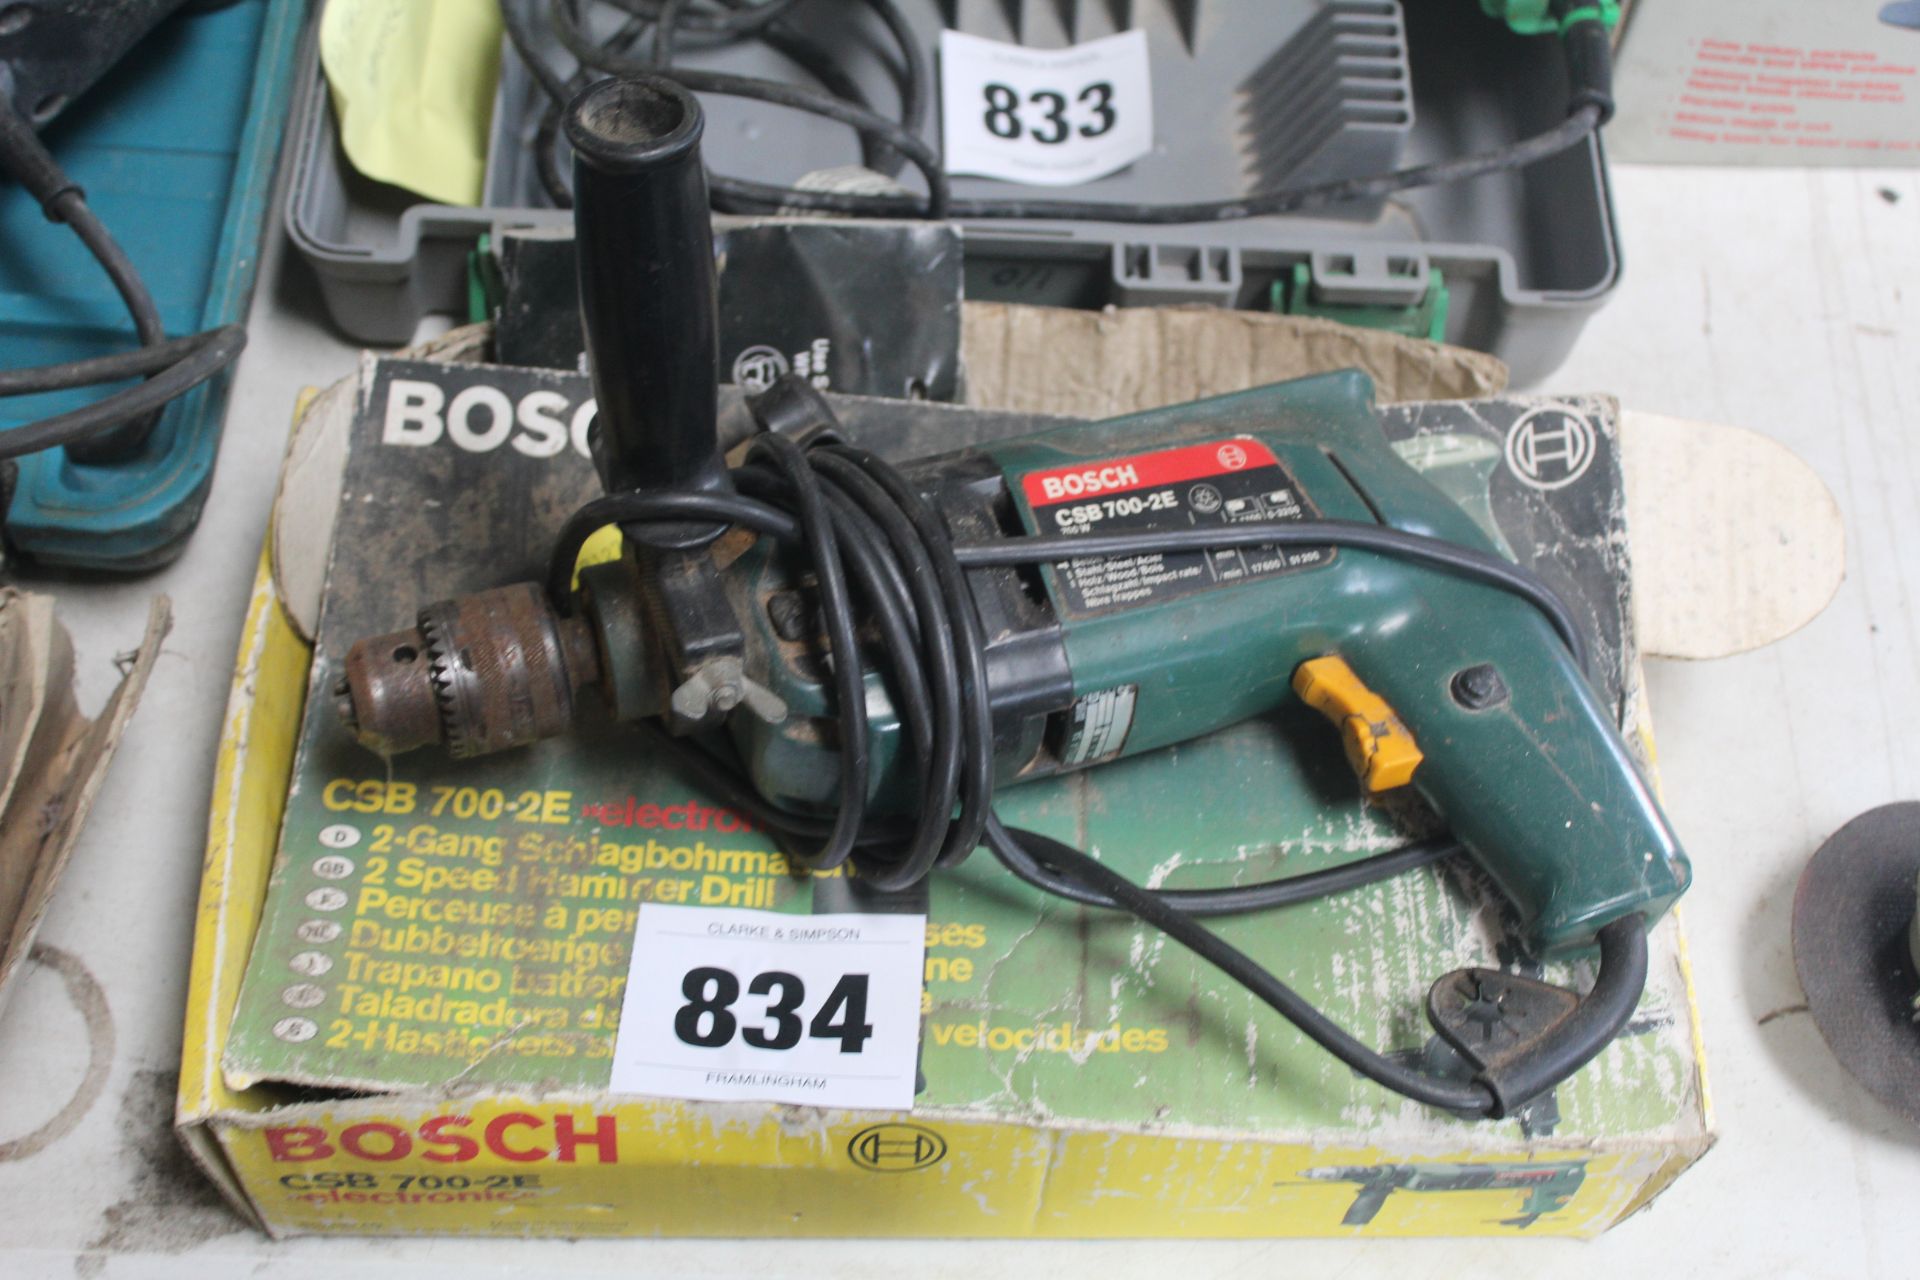 Bosch 240v drill.